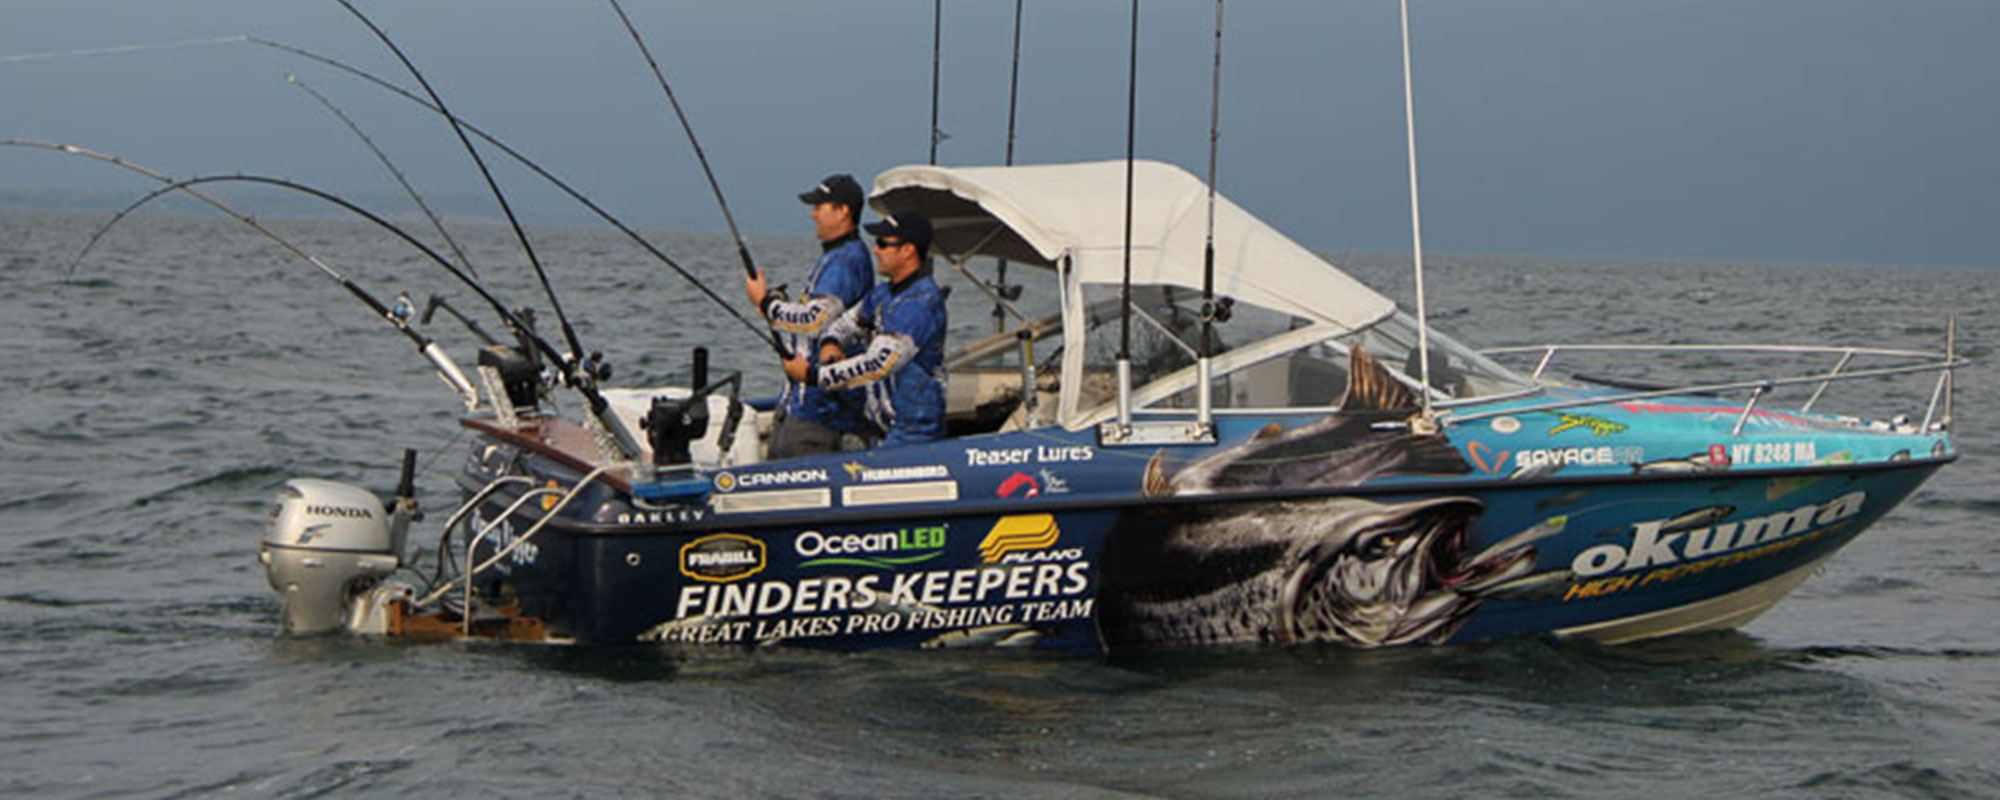 Finders Keeper Fishing team